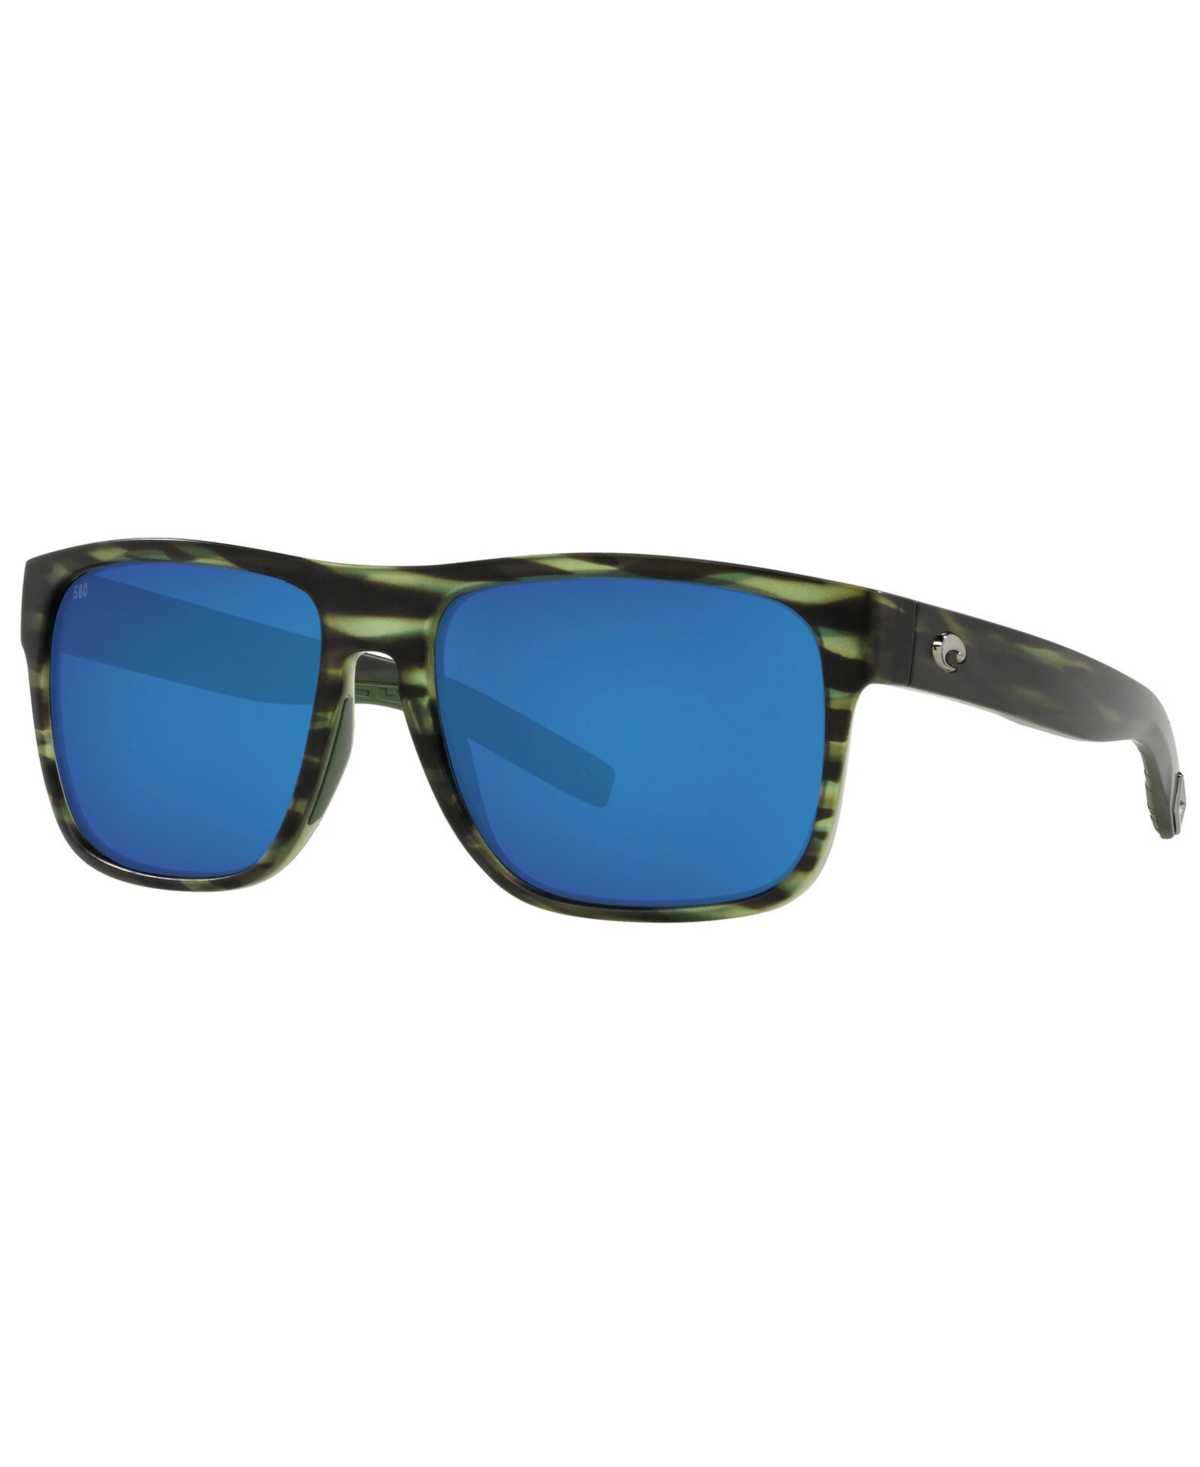 Costa Del Mar Spearo Xl Polarized Sunglasses, 6S9013 59